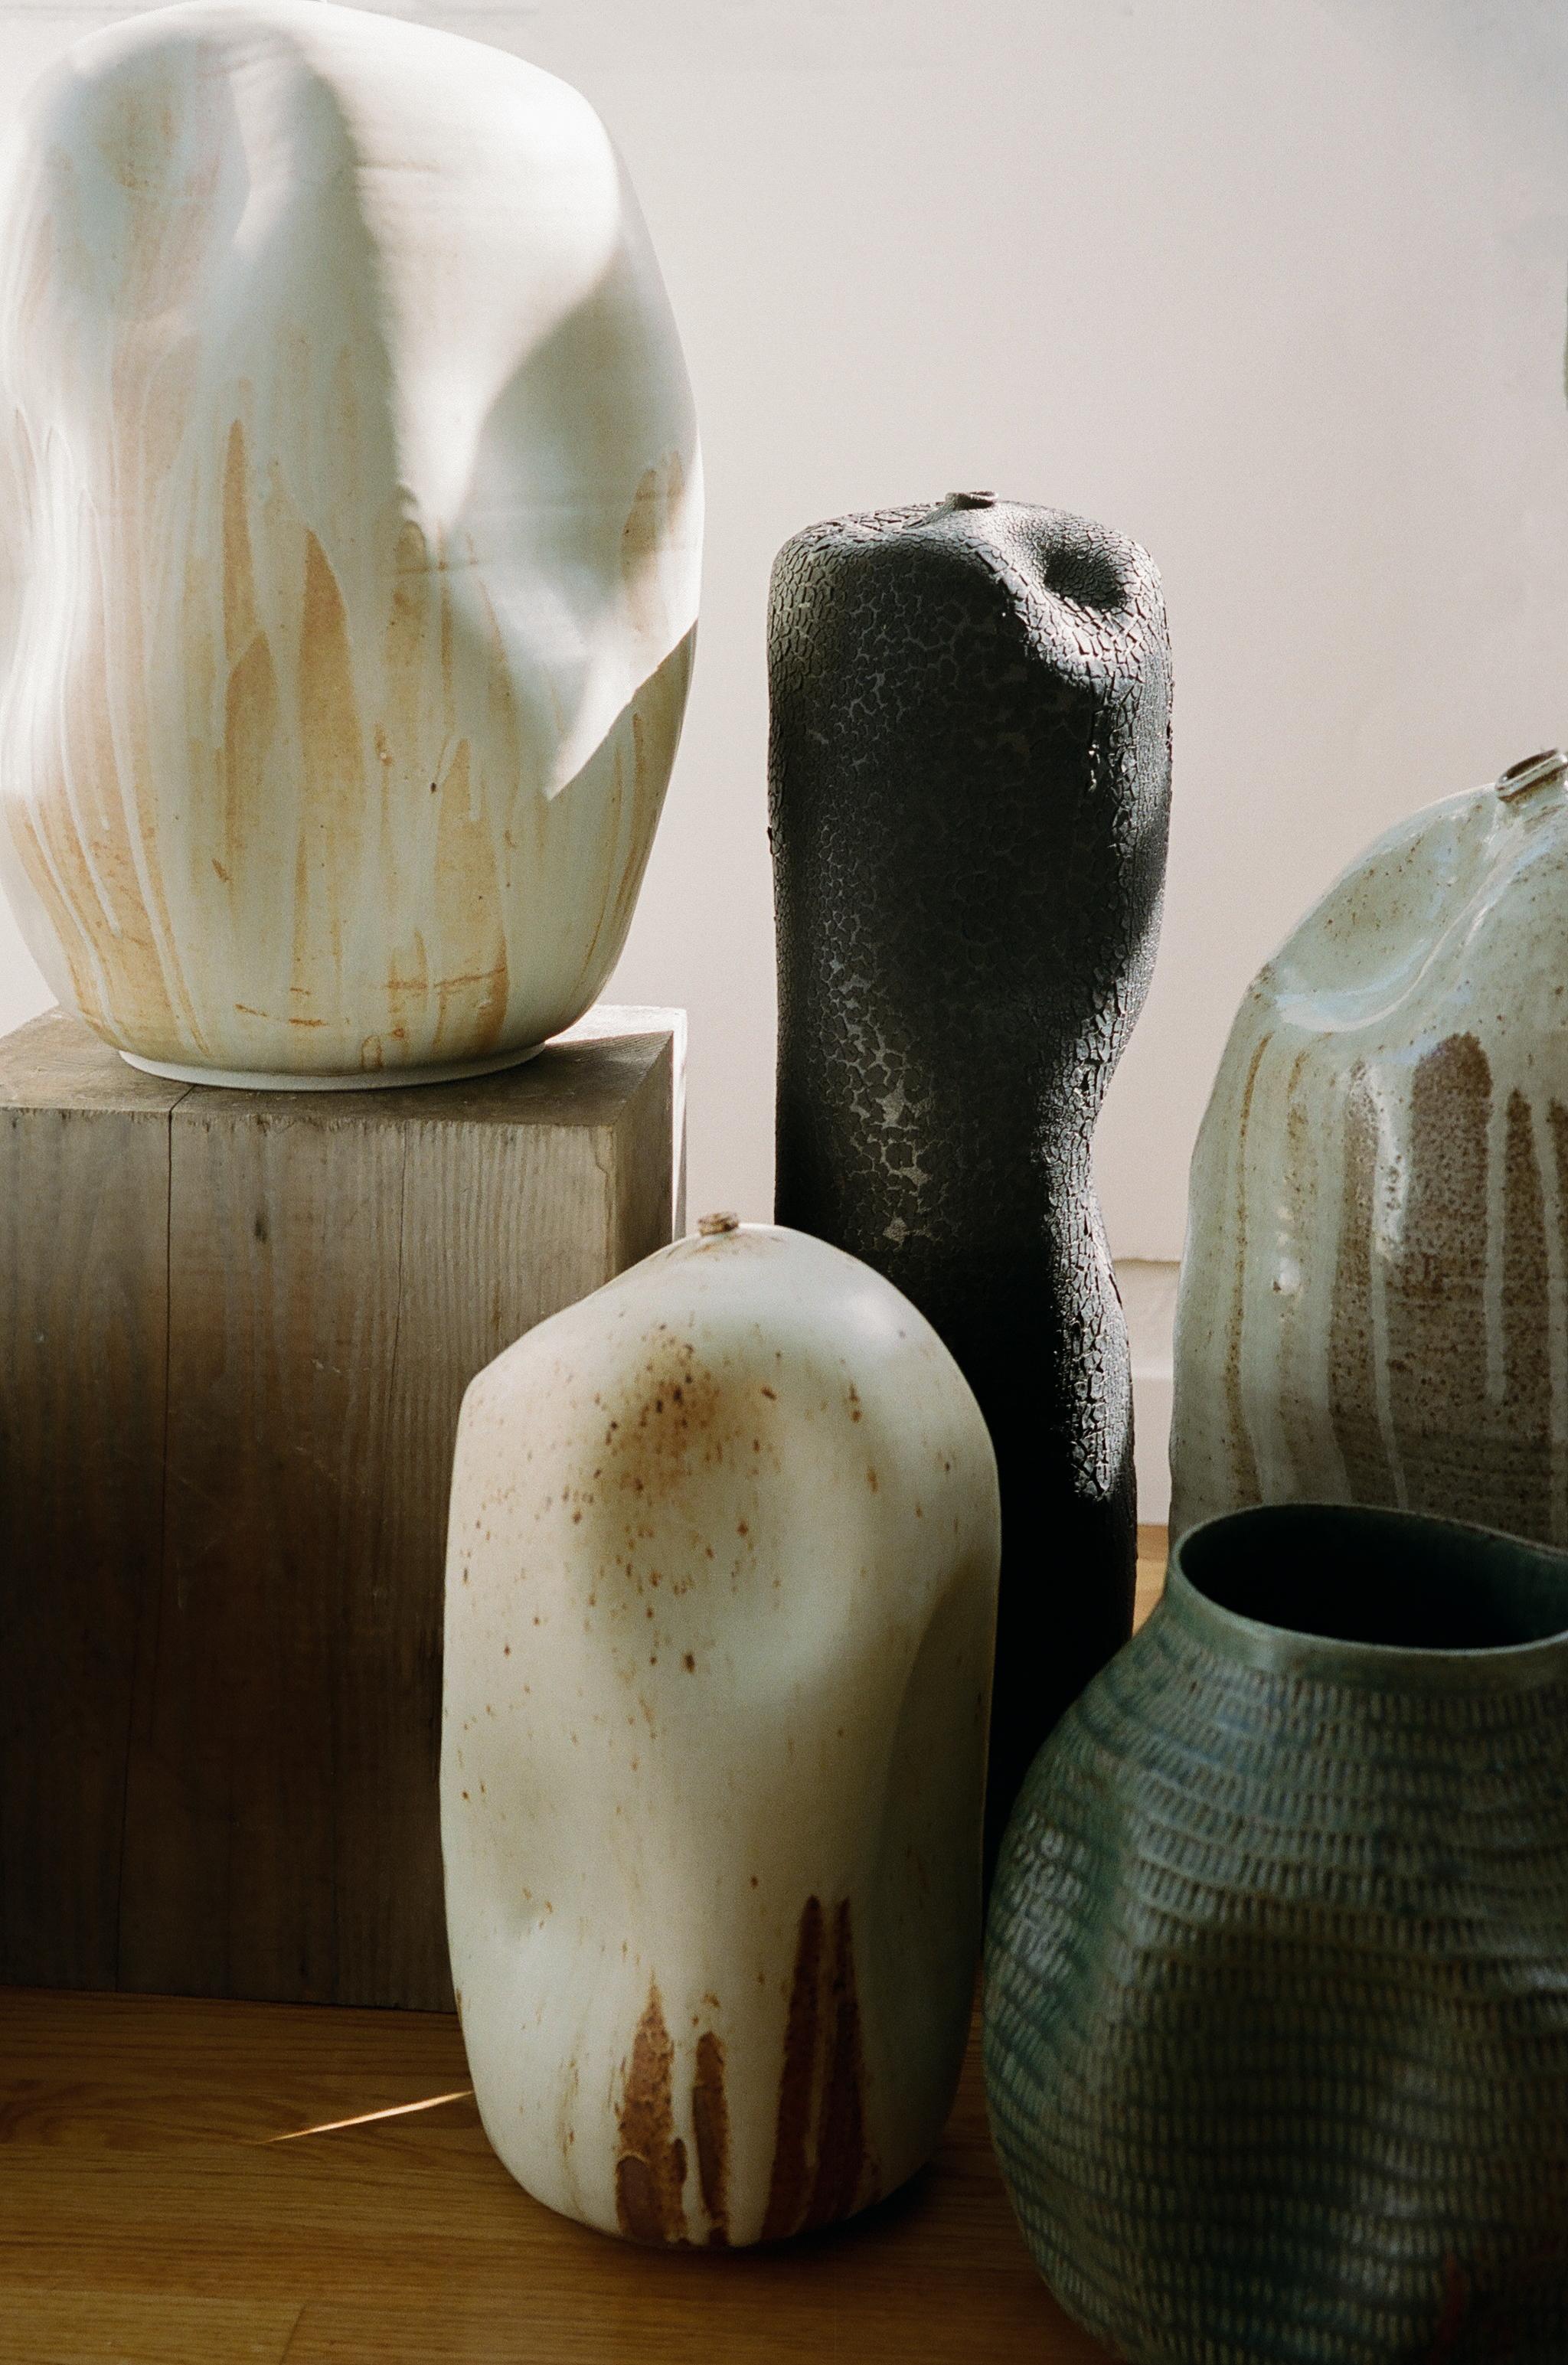 American Skoby Joe Tall Black Textured Ceramic Vase Mid-Century Modern Vessel Wabi Sabi